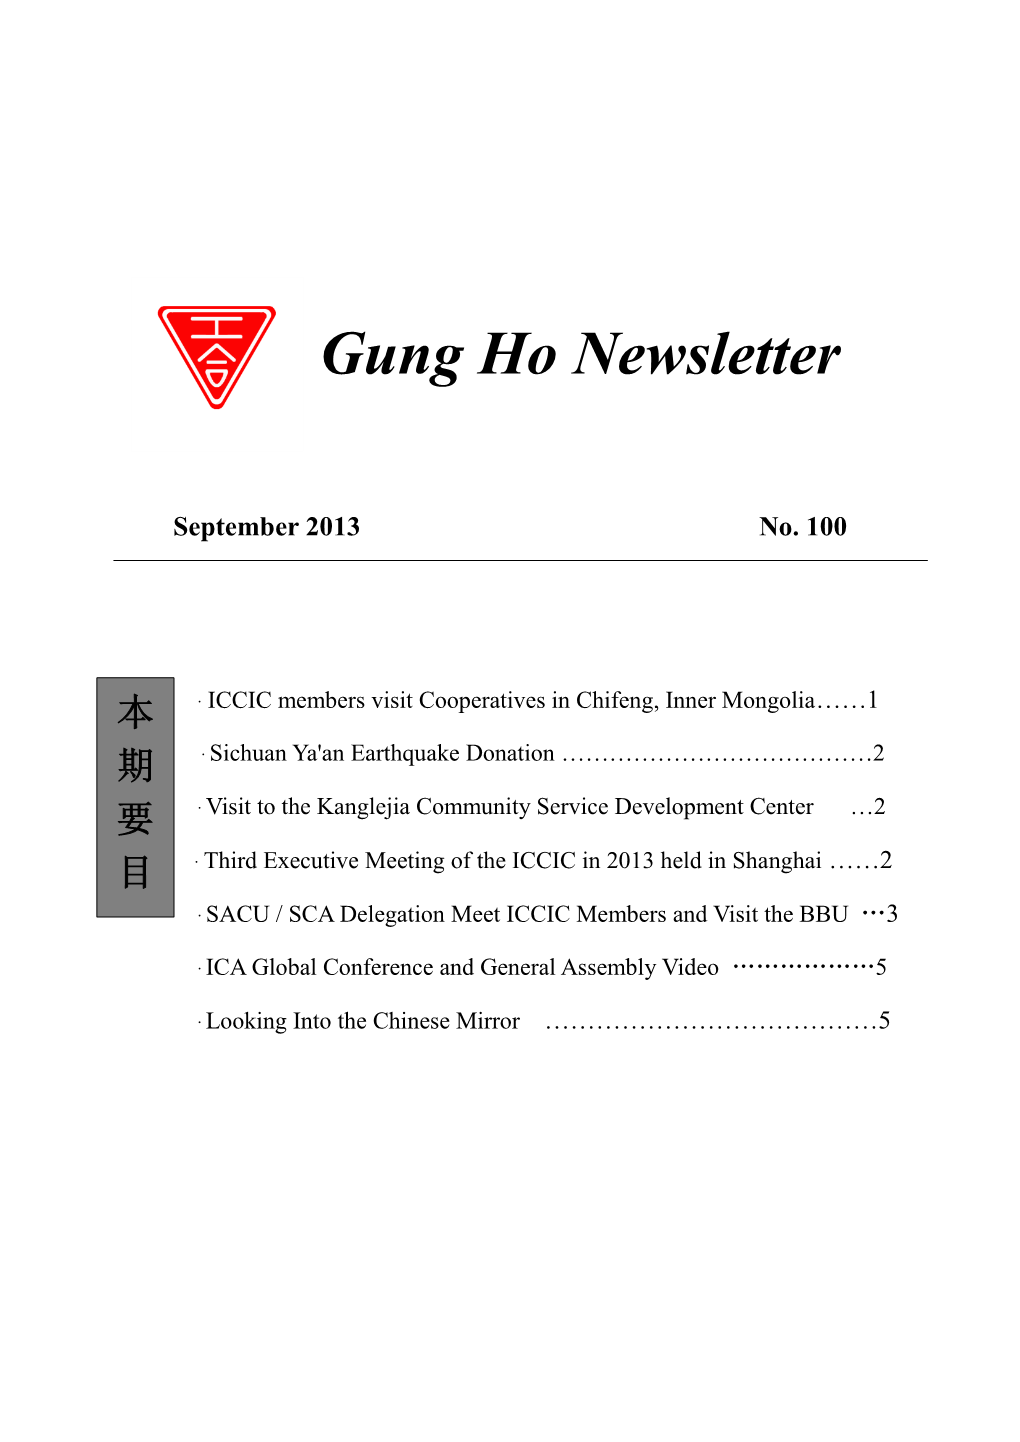 Gung Ho Newsletter No.100